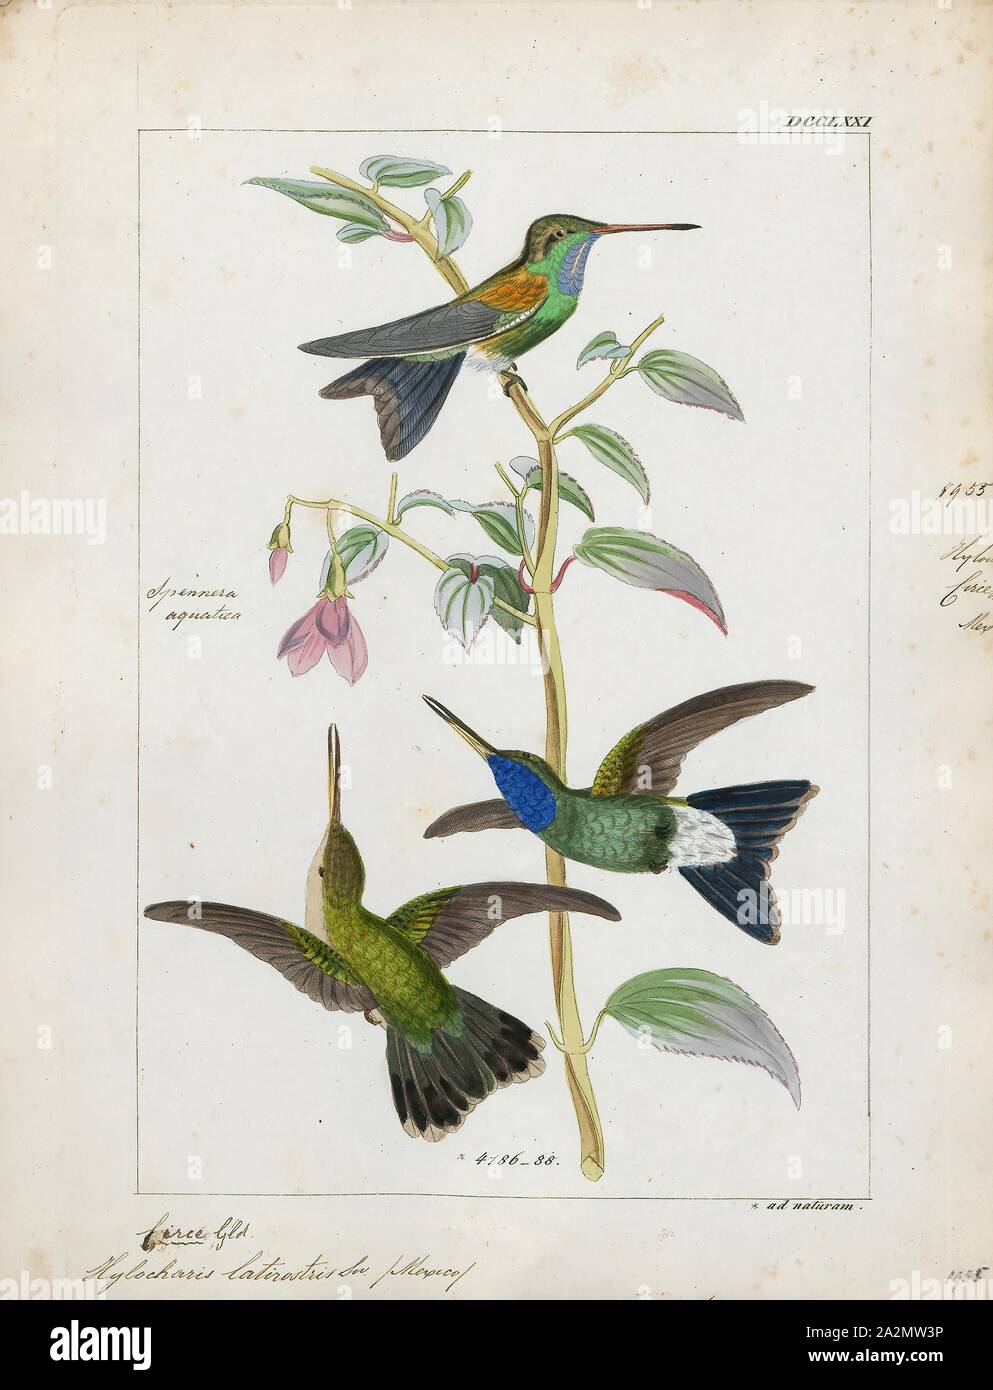 Latirostris Hylocharis, Drucken, Hylocharis ist eine Gattung von Hummingbird, in der Familie der., 1820-1860 Stockfoto